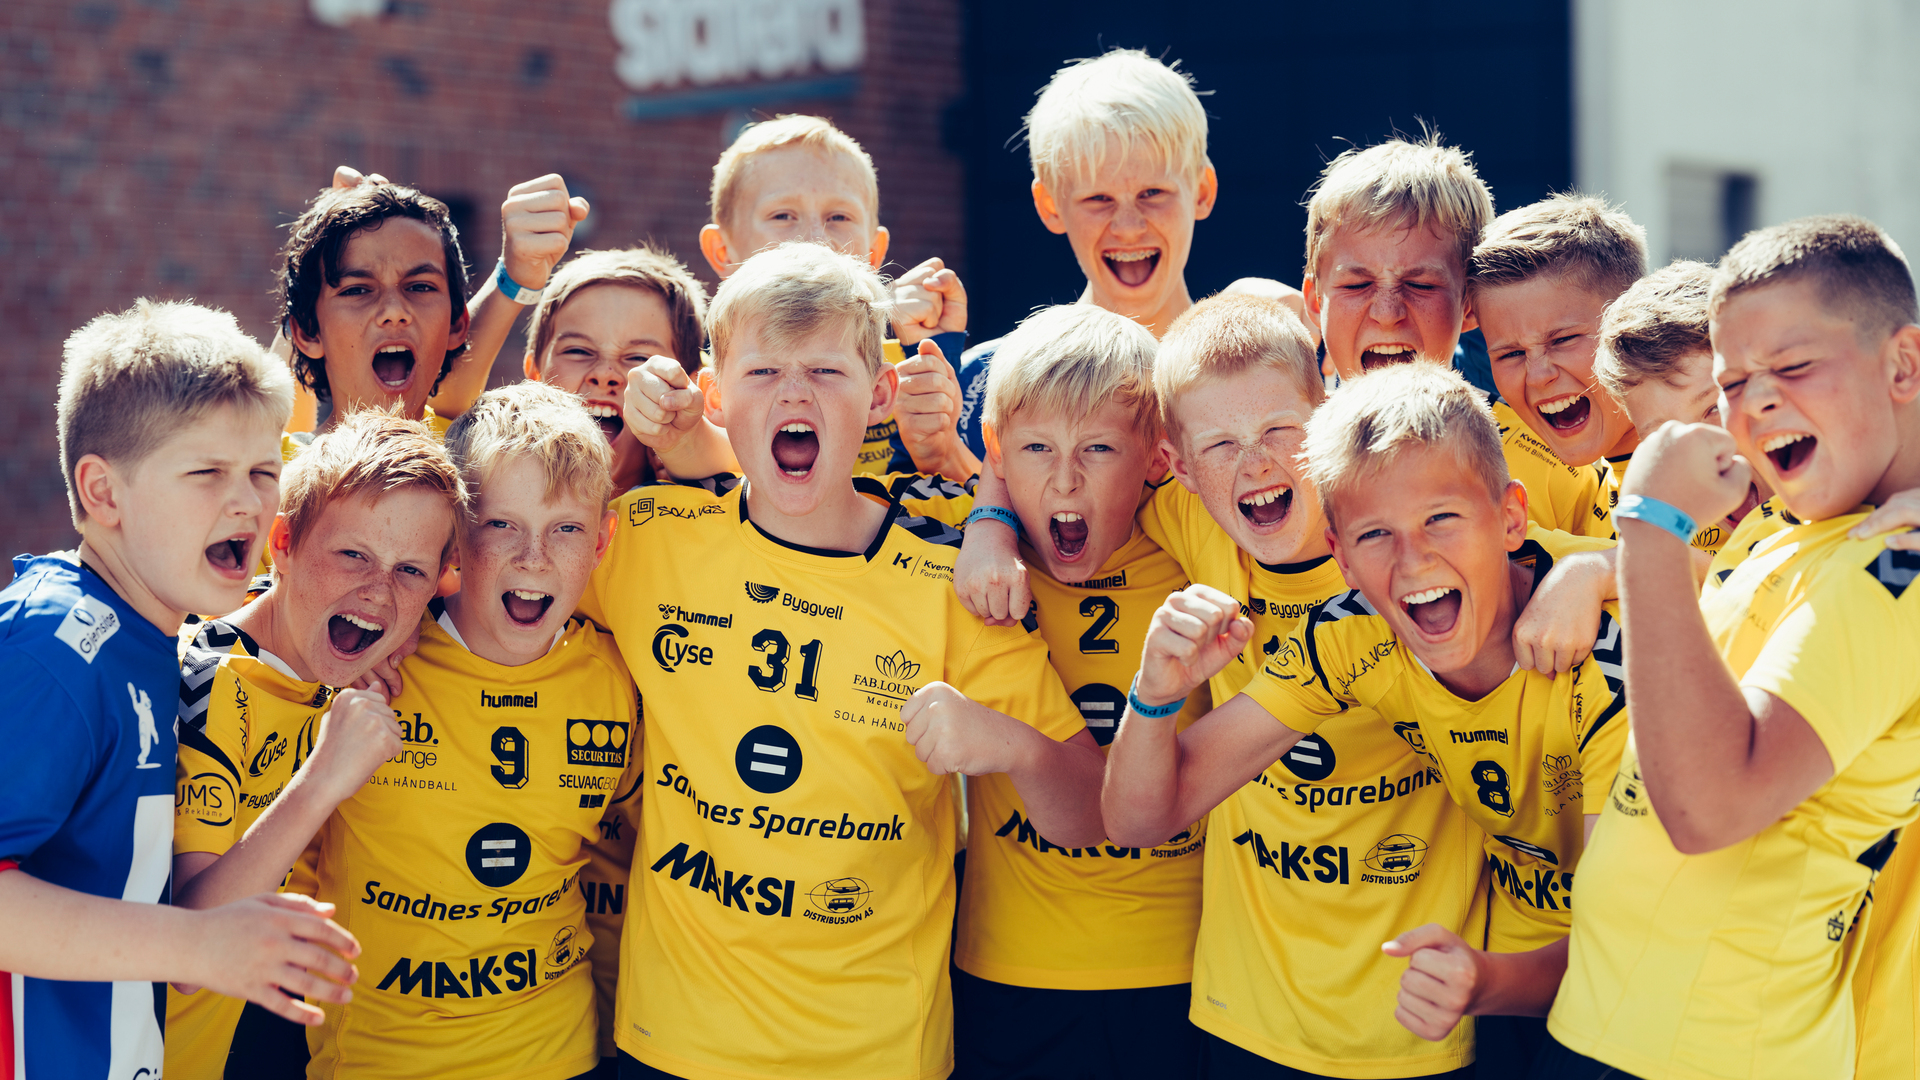 Foto: Erik Ruud/Norges idrettsforbund